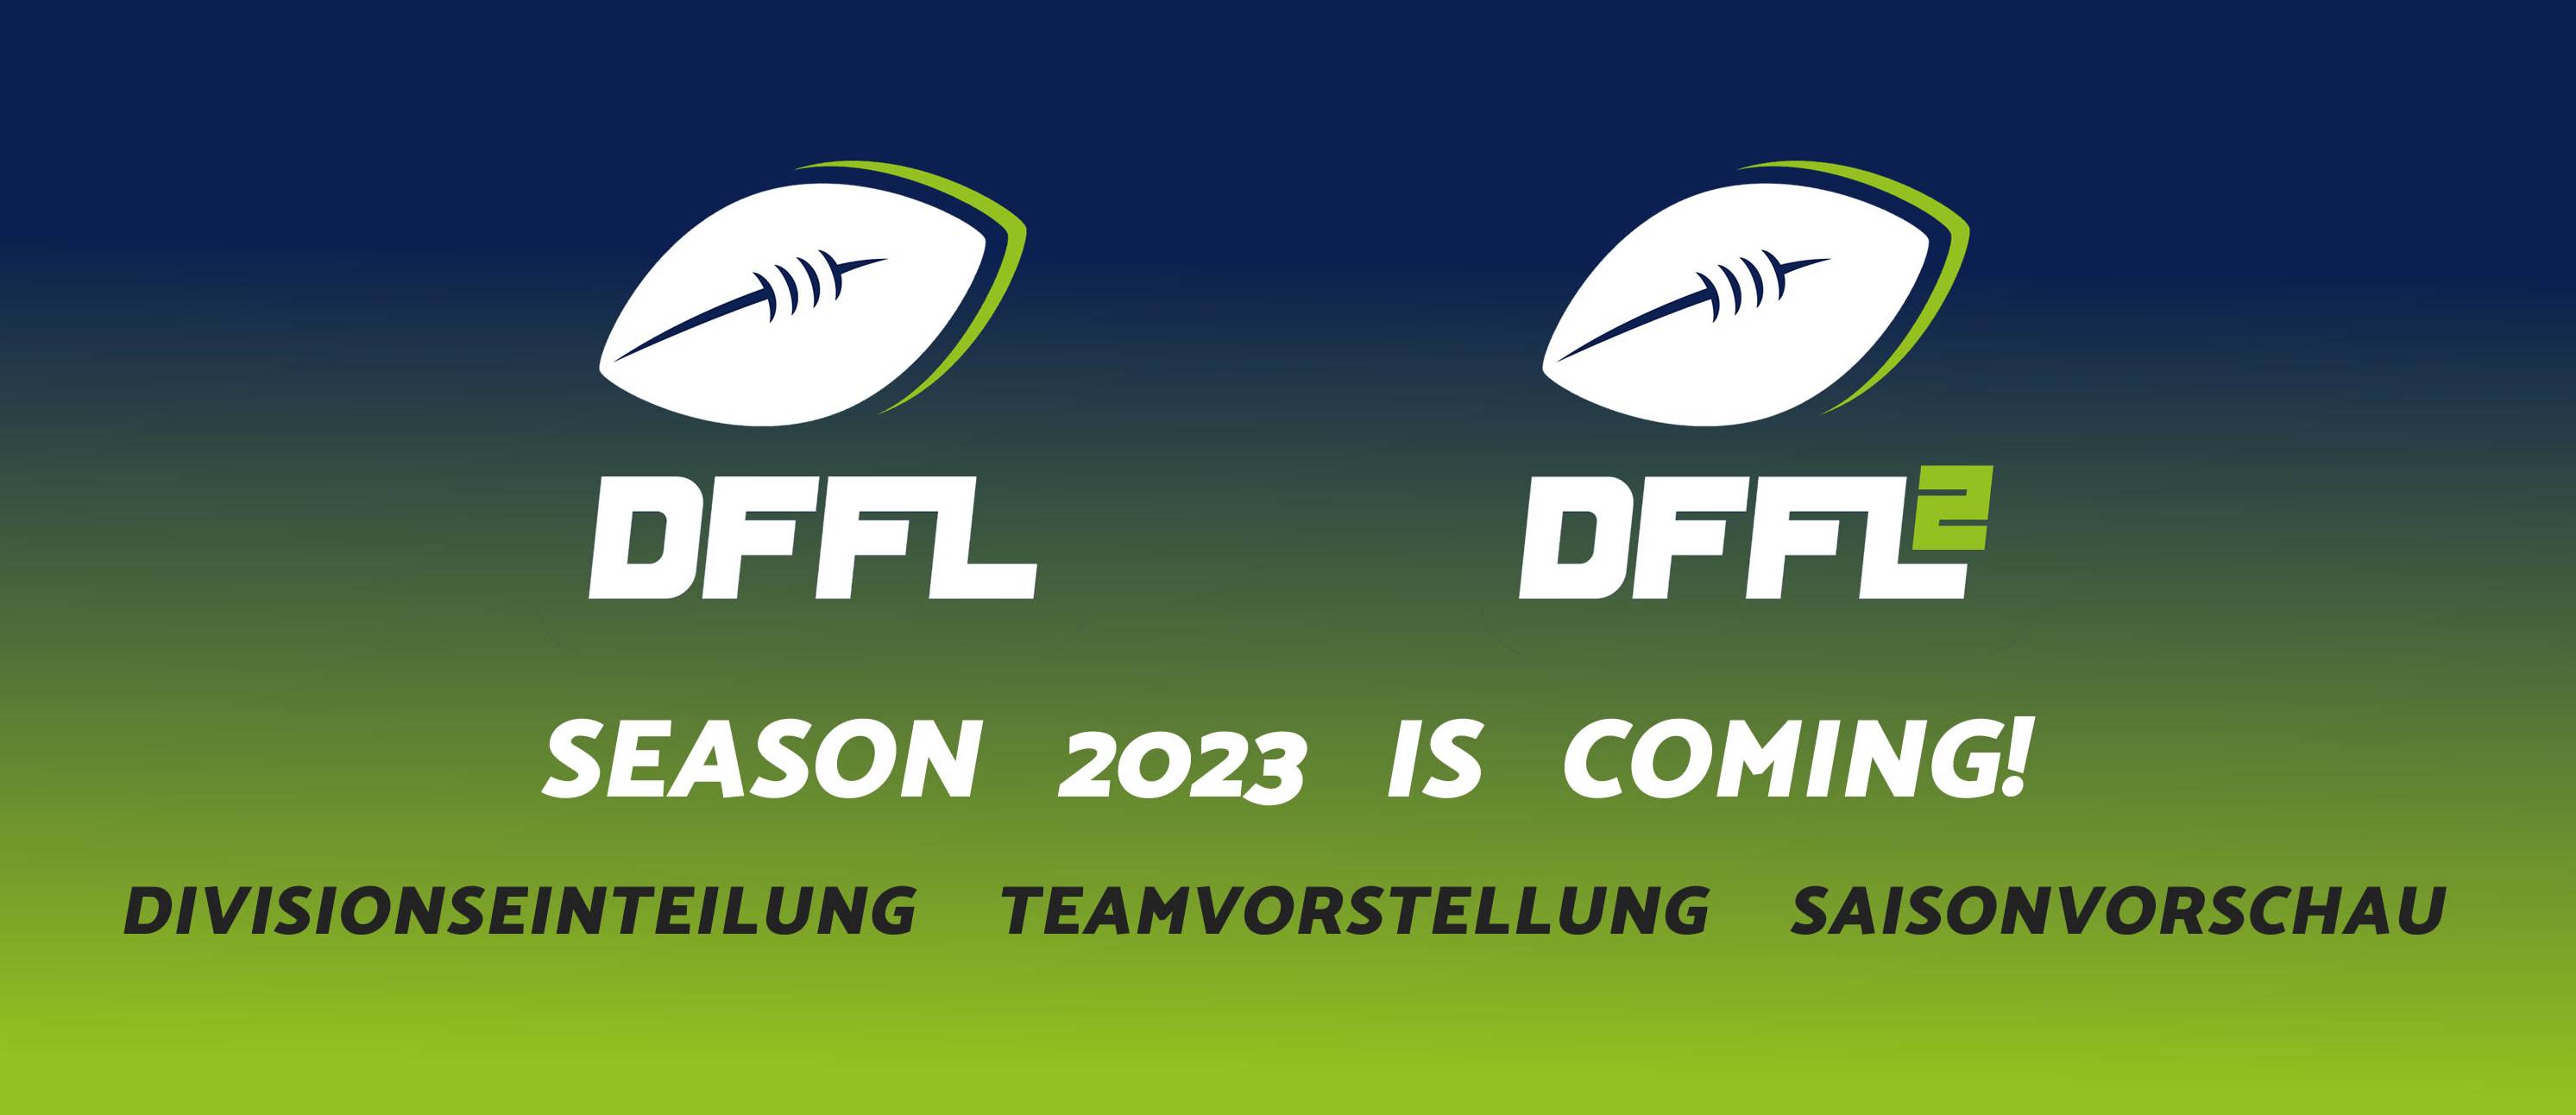 Season 2023 is coming DFFL/DFFL 2 | Logos: ©AFVD